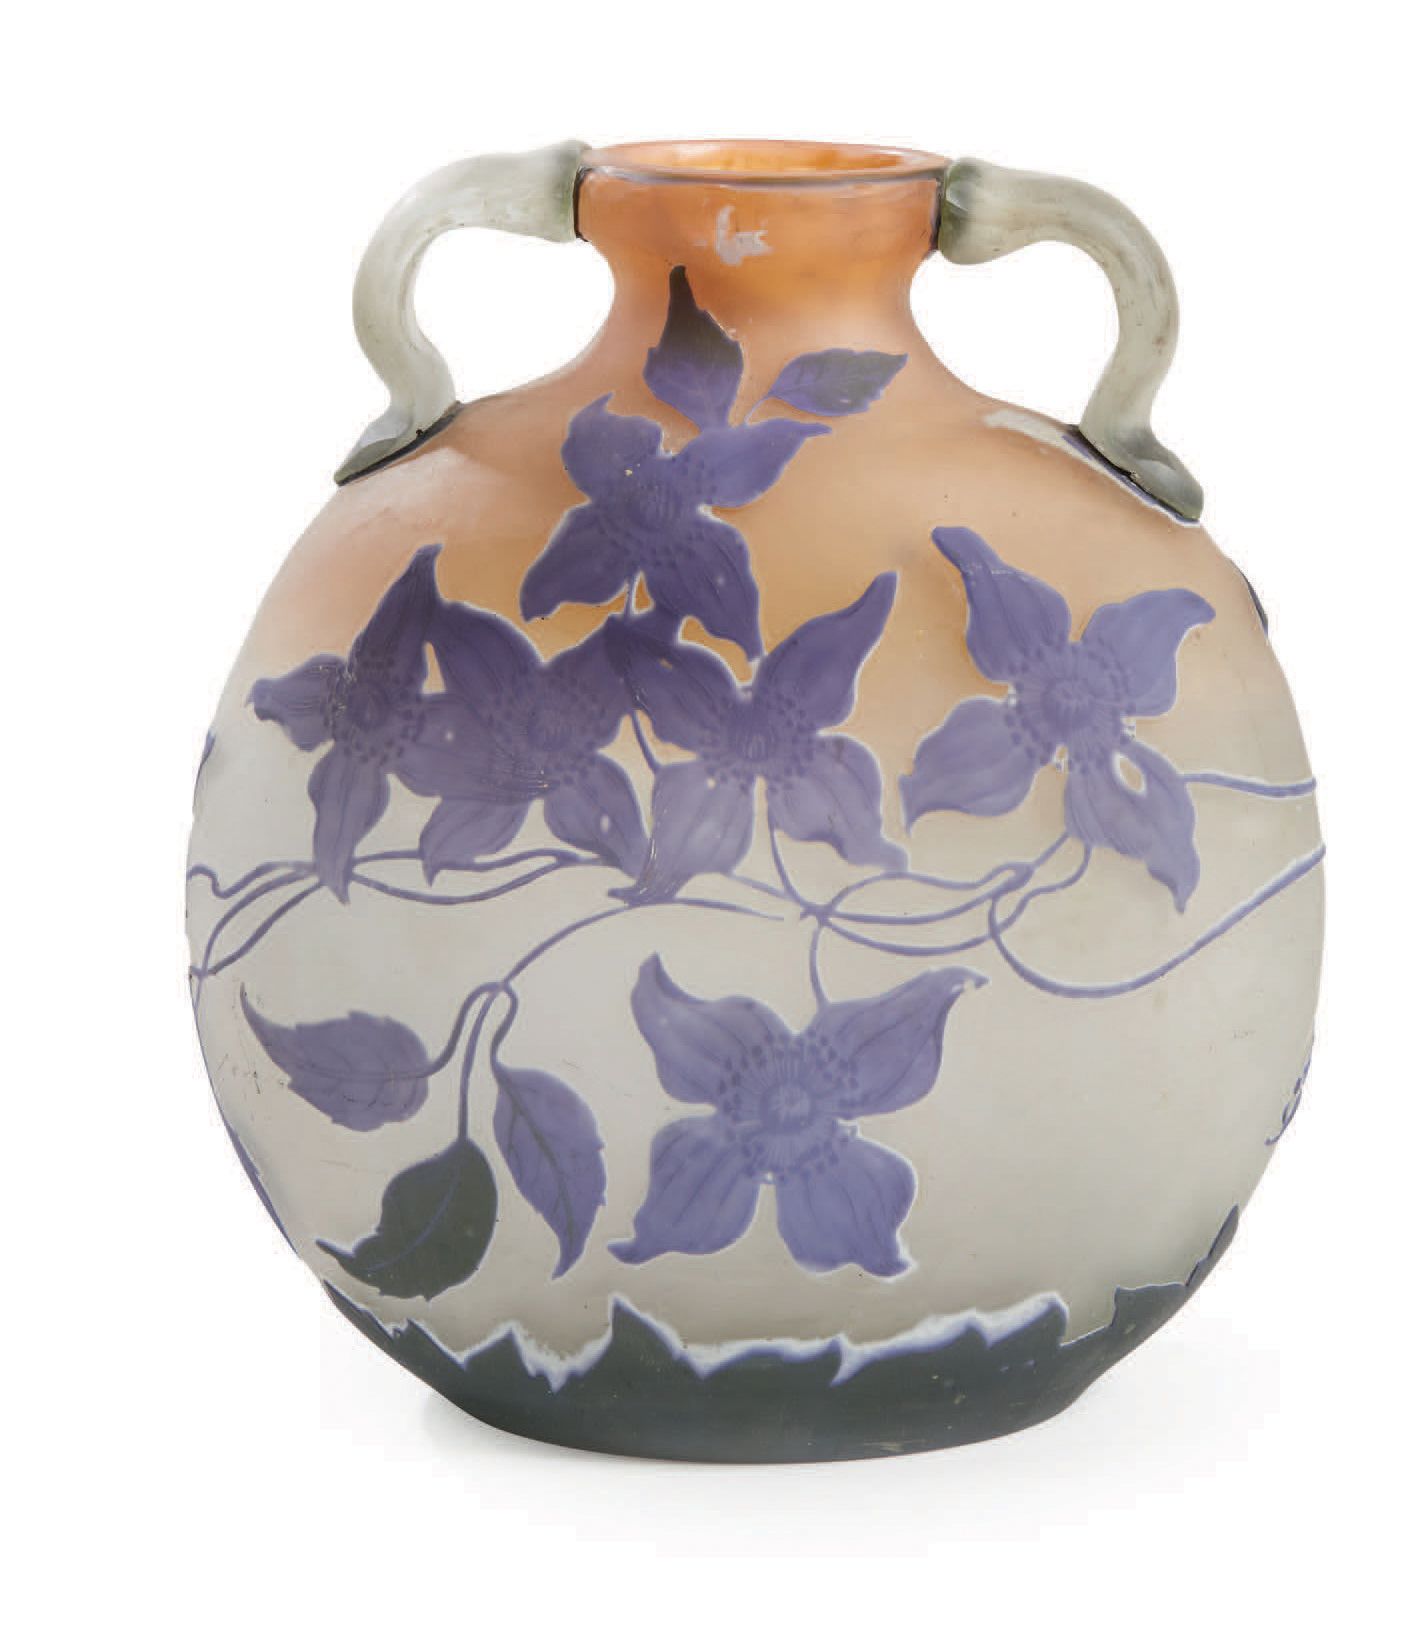 ÉTABLISSEMENTS GALLÉ 有衬里的玻璃葫芦花瓶，有热贴的把手和不透明背景上的蓝色和绿色花卉图案的酸蚀装饰
签名："Gallé"
大约1920年
&hellip;